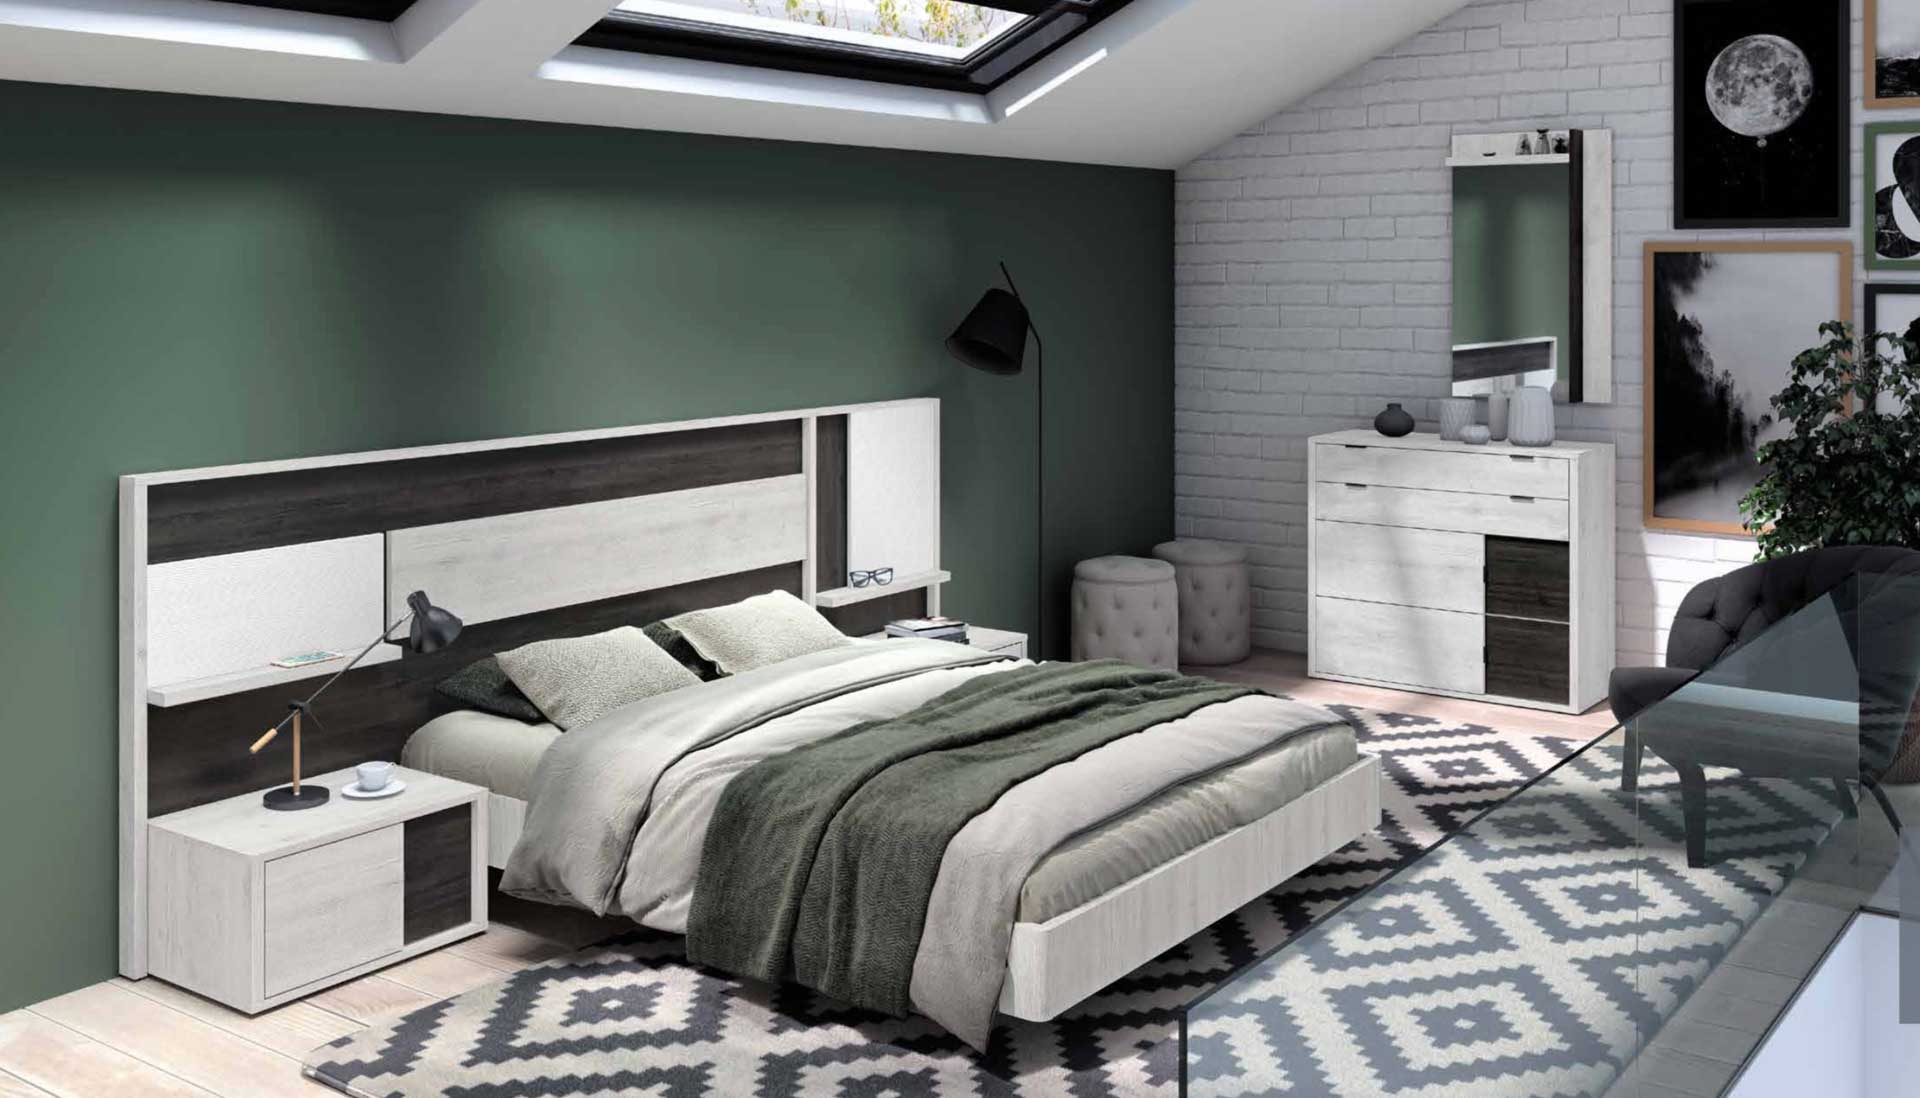 Diseño de mobiliario de dormitorio 34